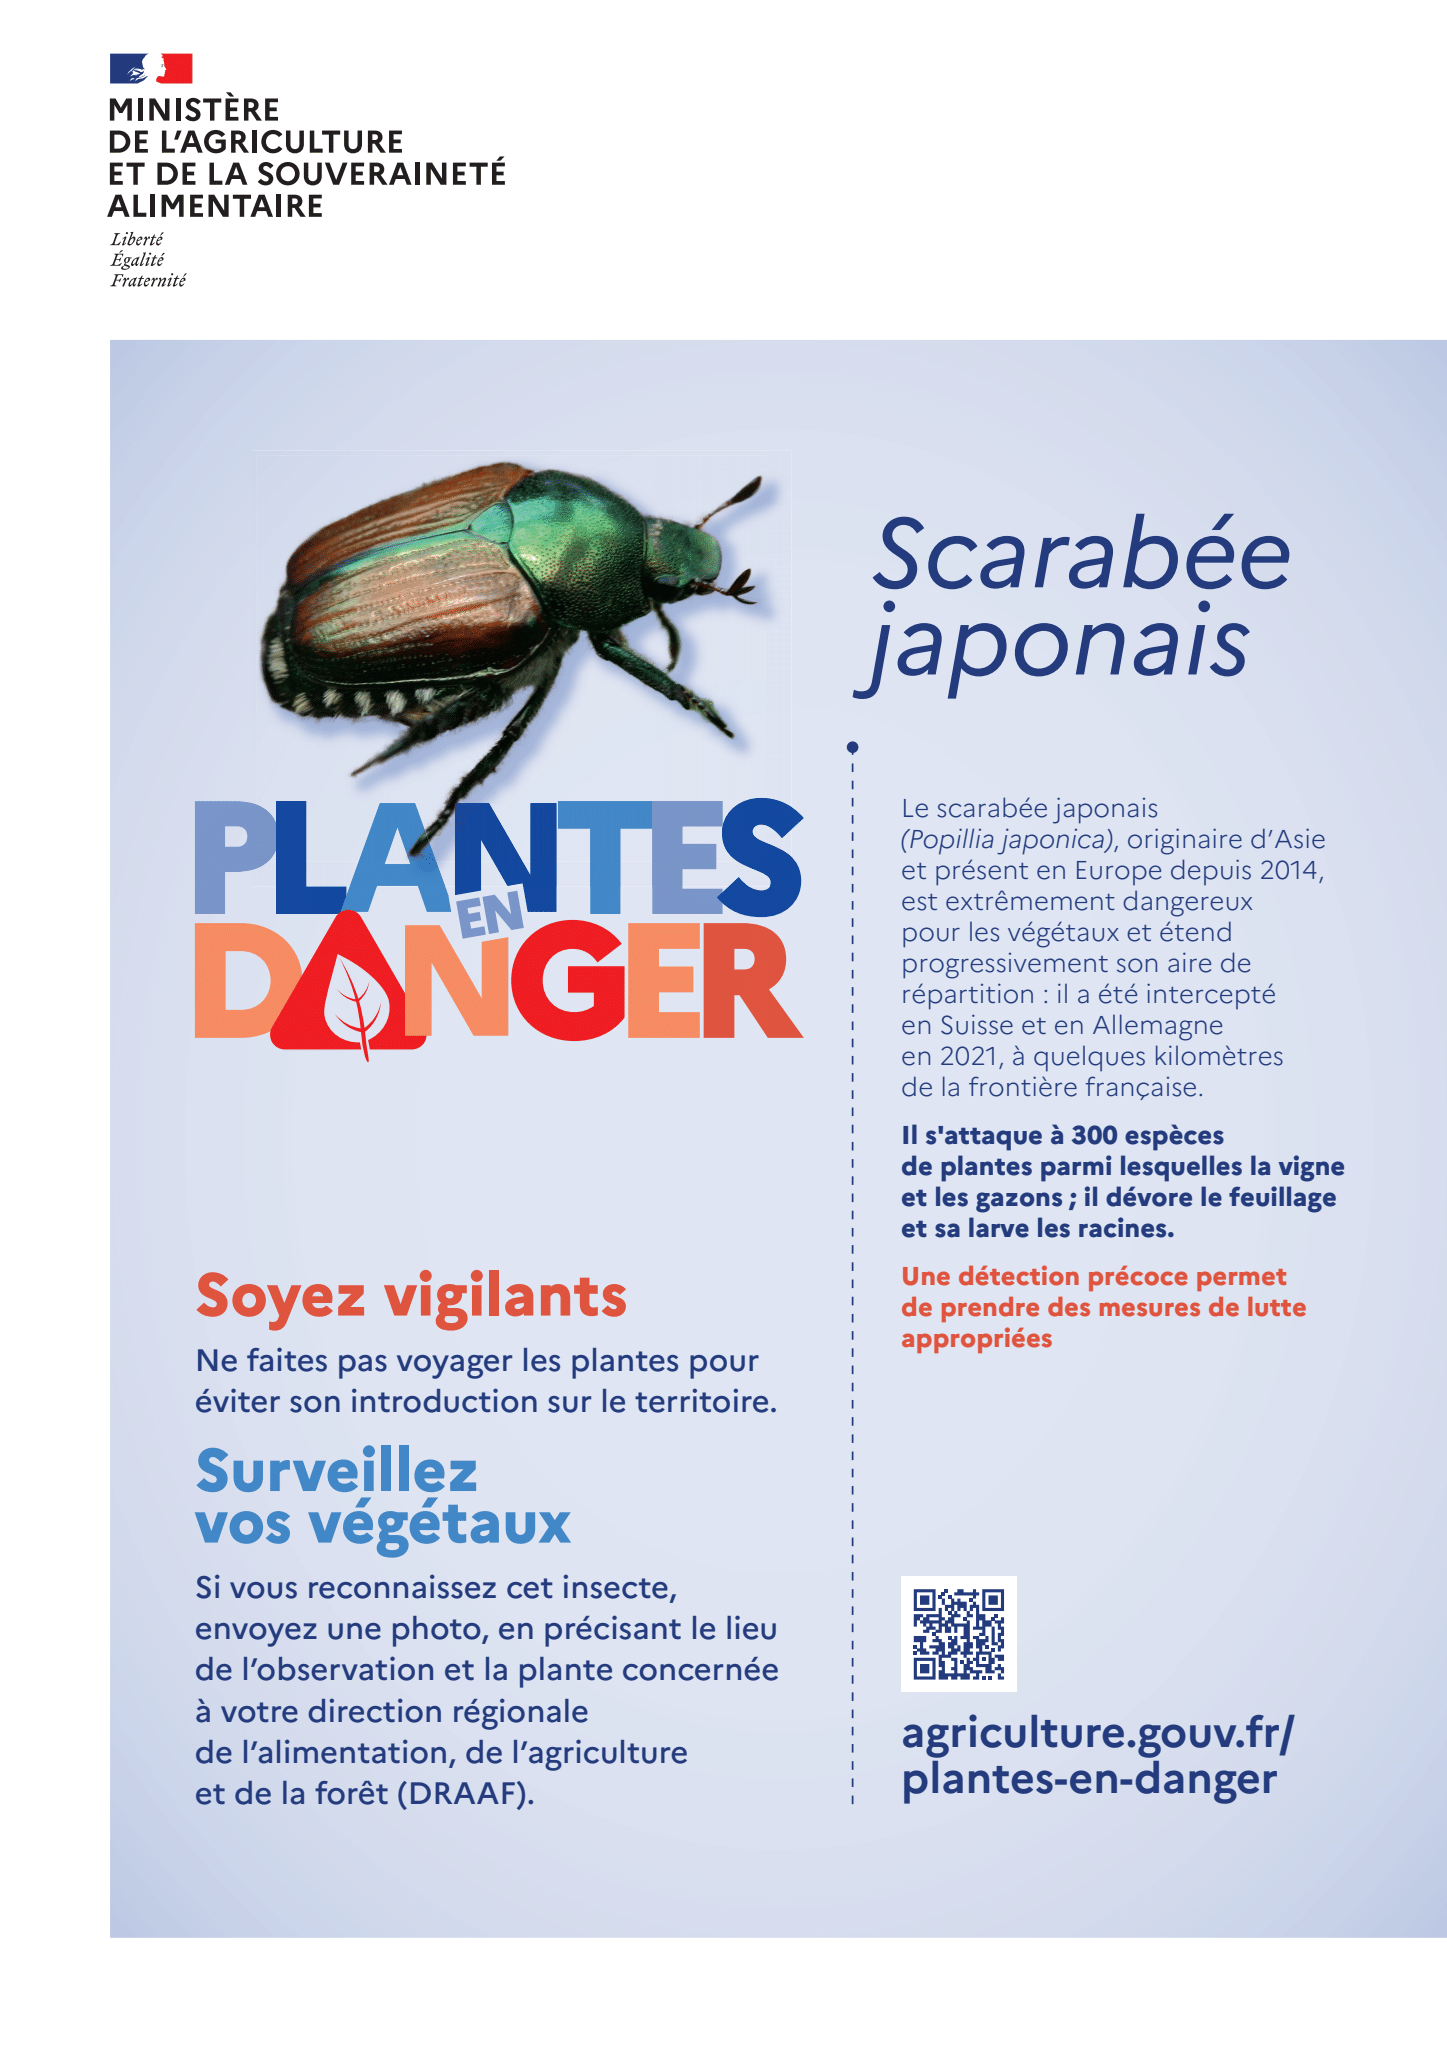 Affiche sur popillia japonica de la campagne "Plantes en danger"